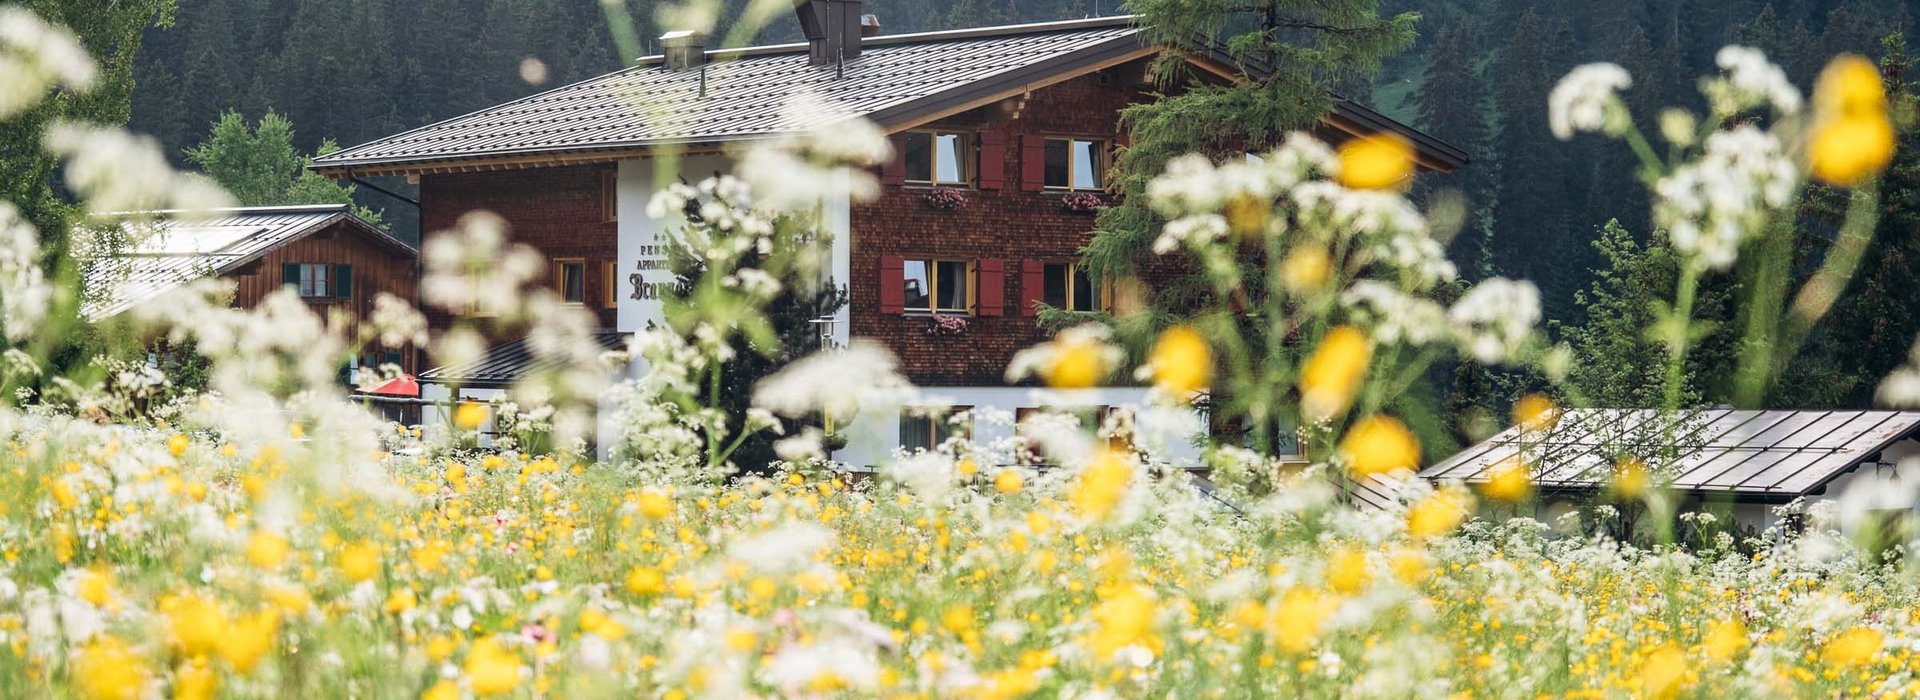 Haus Braunarl mit einer Blumenwiese im Vordergrund.